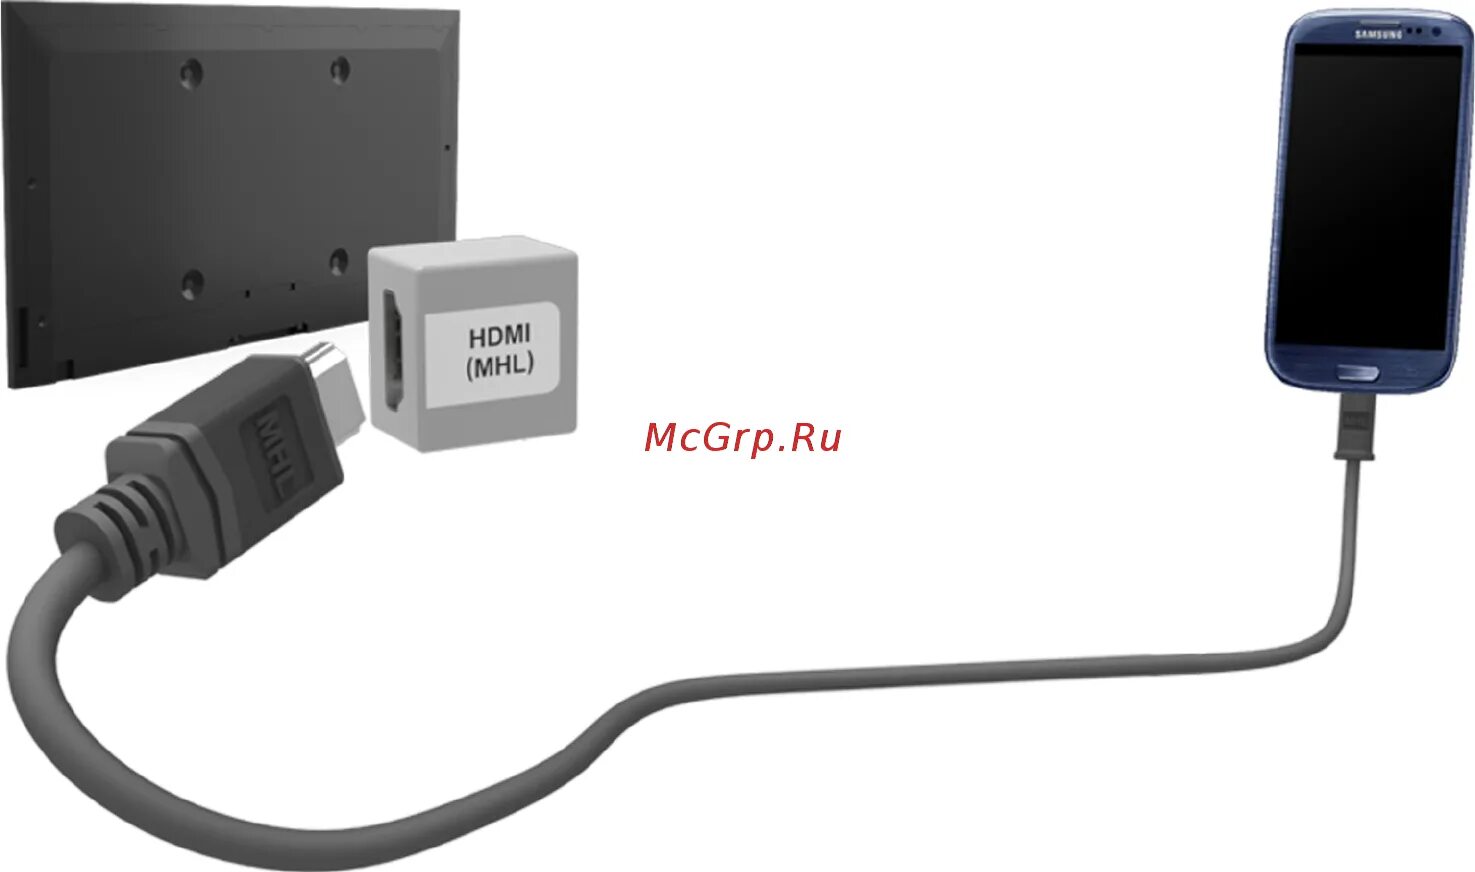 Телевизор через hdmi. Шнур для подключения телефона к телевизору через HDMI кабель. Подключить самсунг j4 к телевизору по кабелю MHL. Подключить самсунг к ТВ через HDMI. Телевизор самсунг через HDMI кабель.